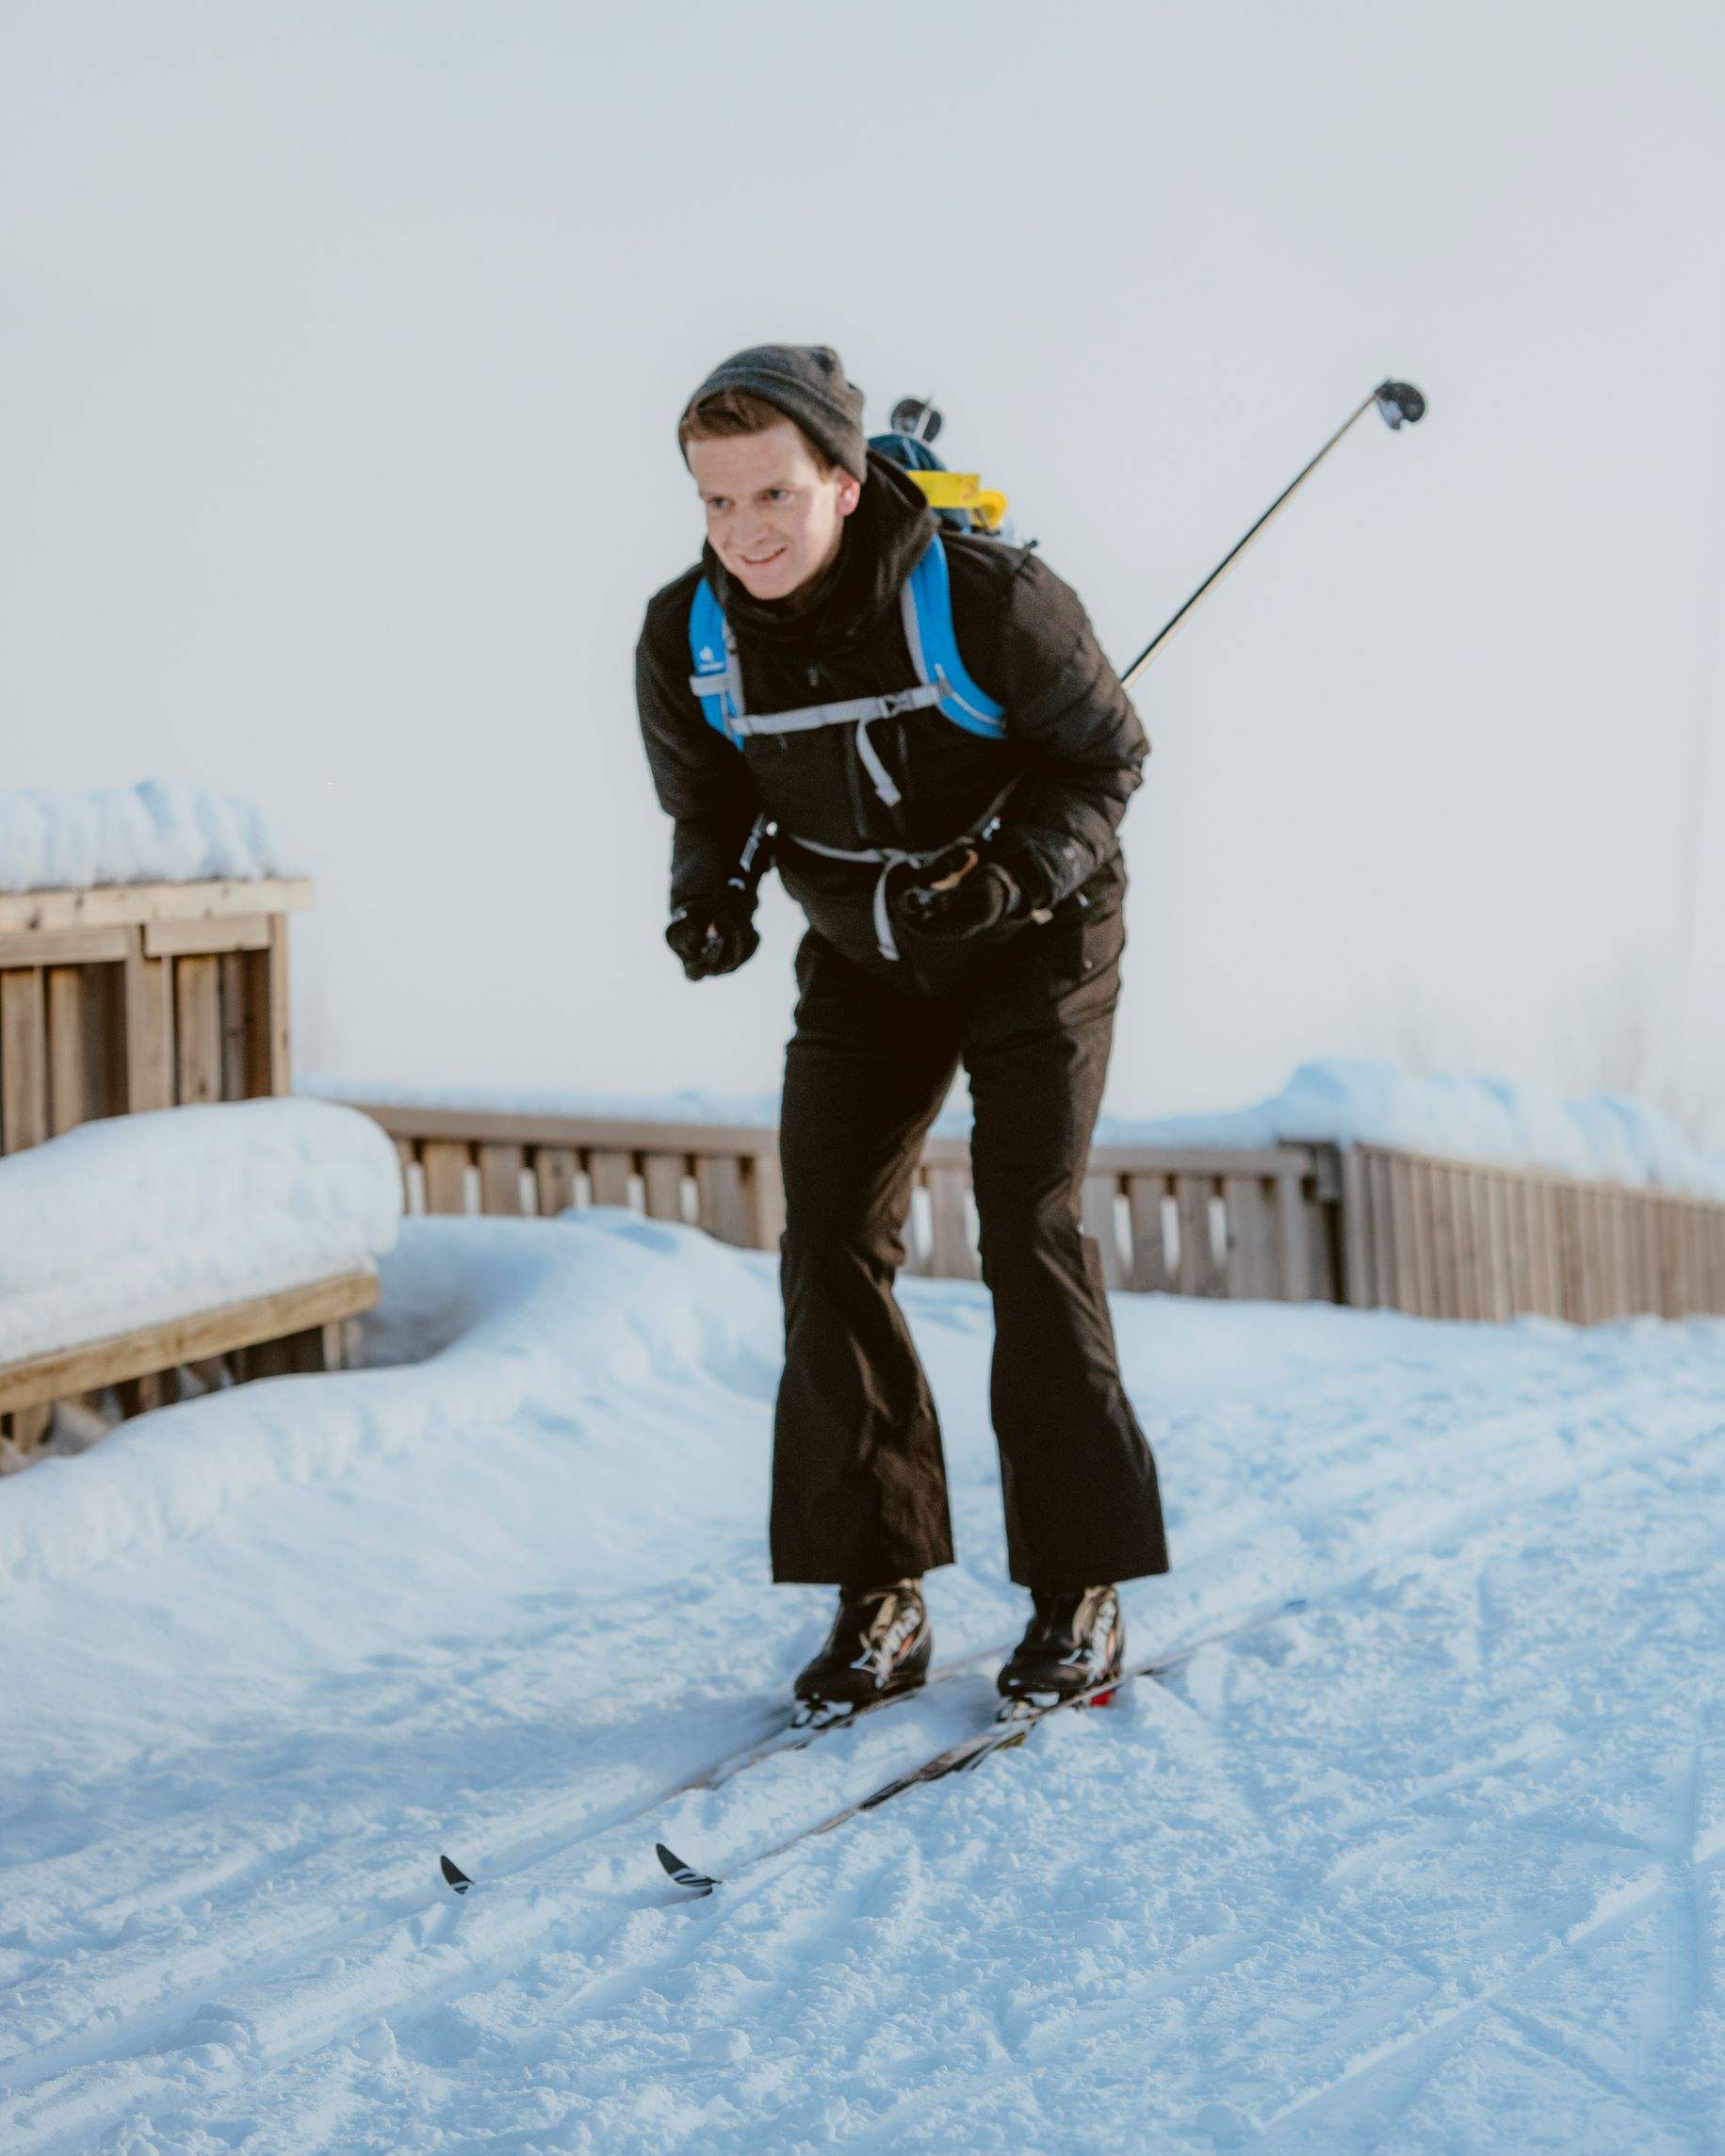 Cross country skiing: skiën voor lichaam en geest